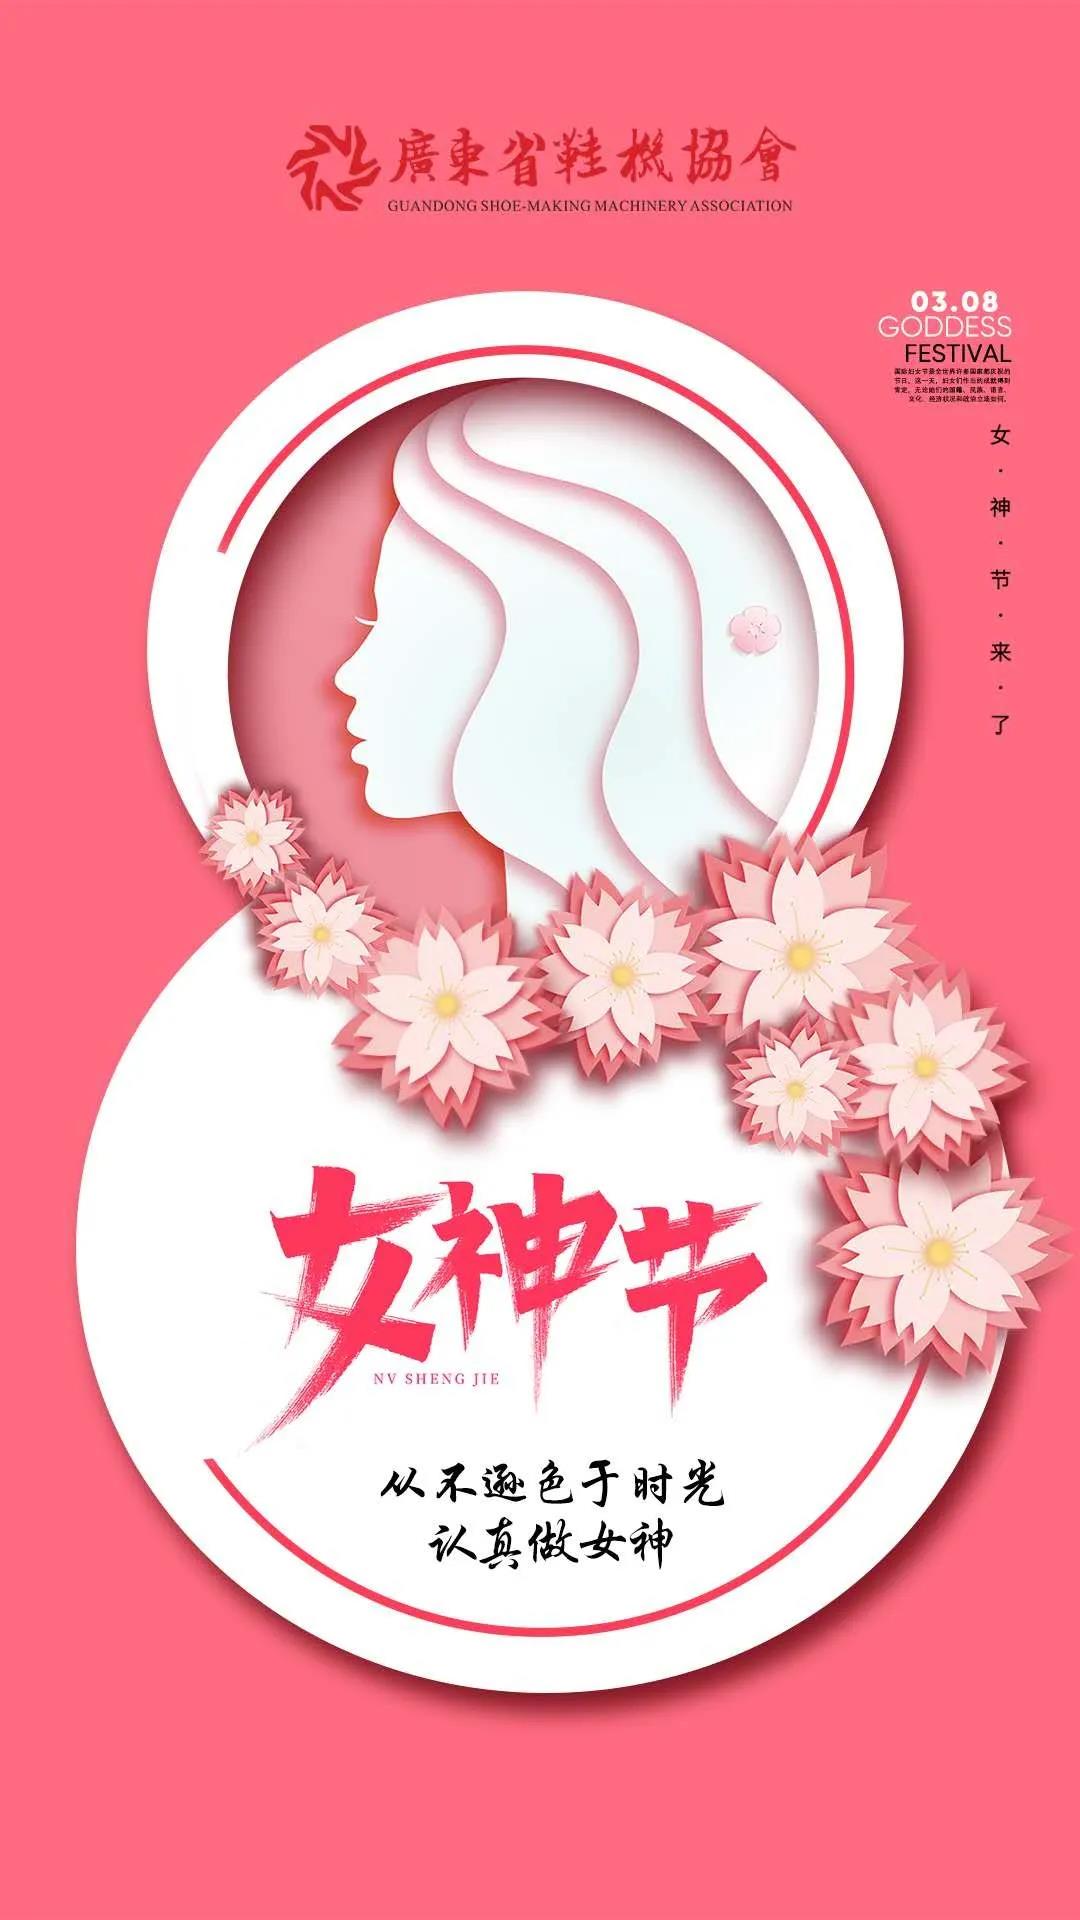 广东省鞋机协会祝福各位女神节日快乐！